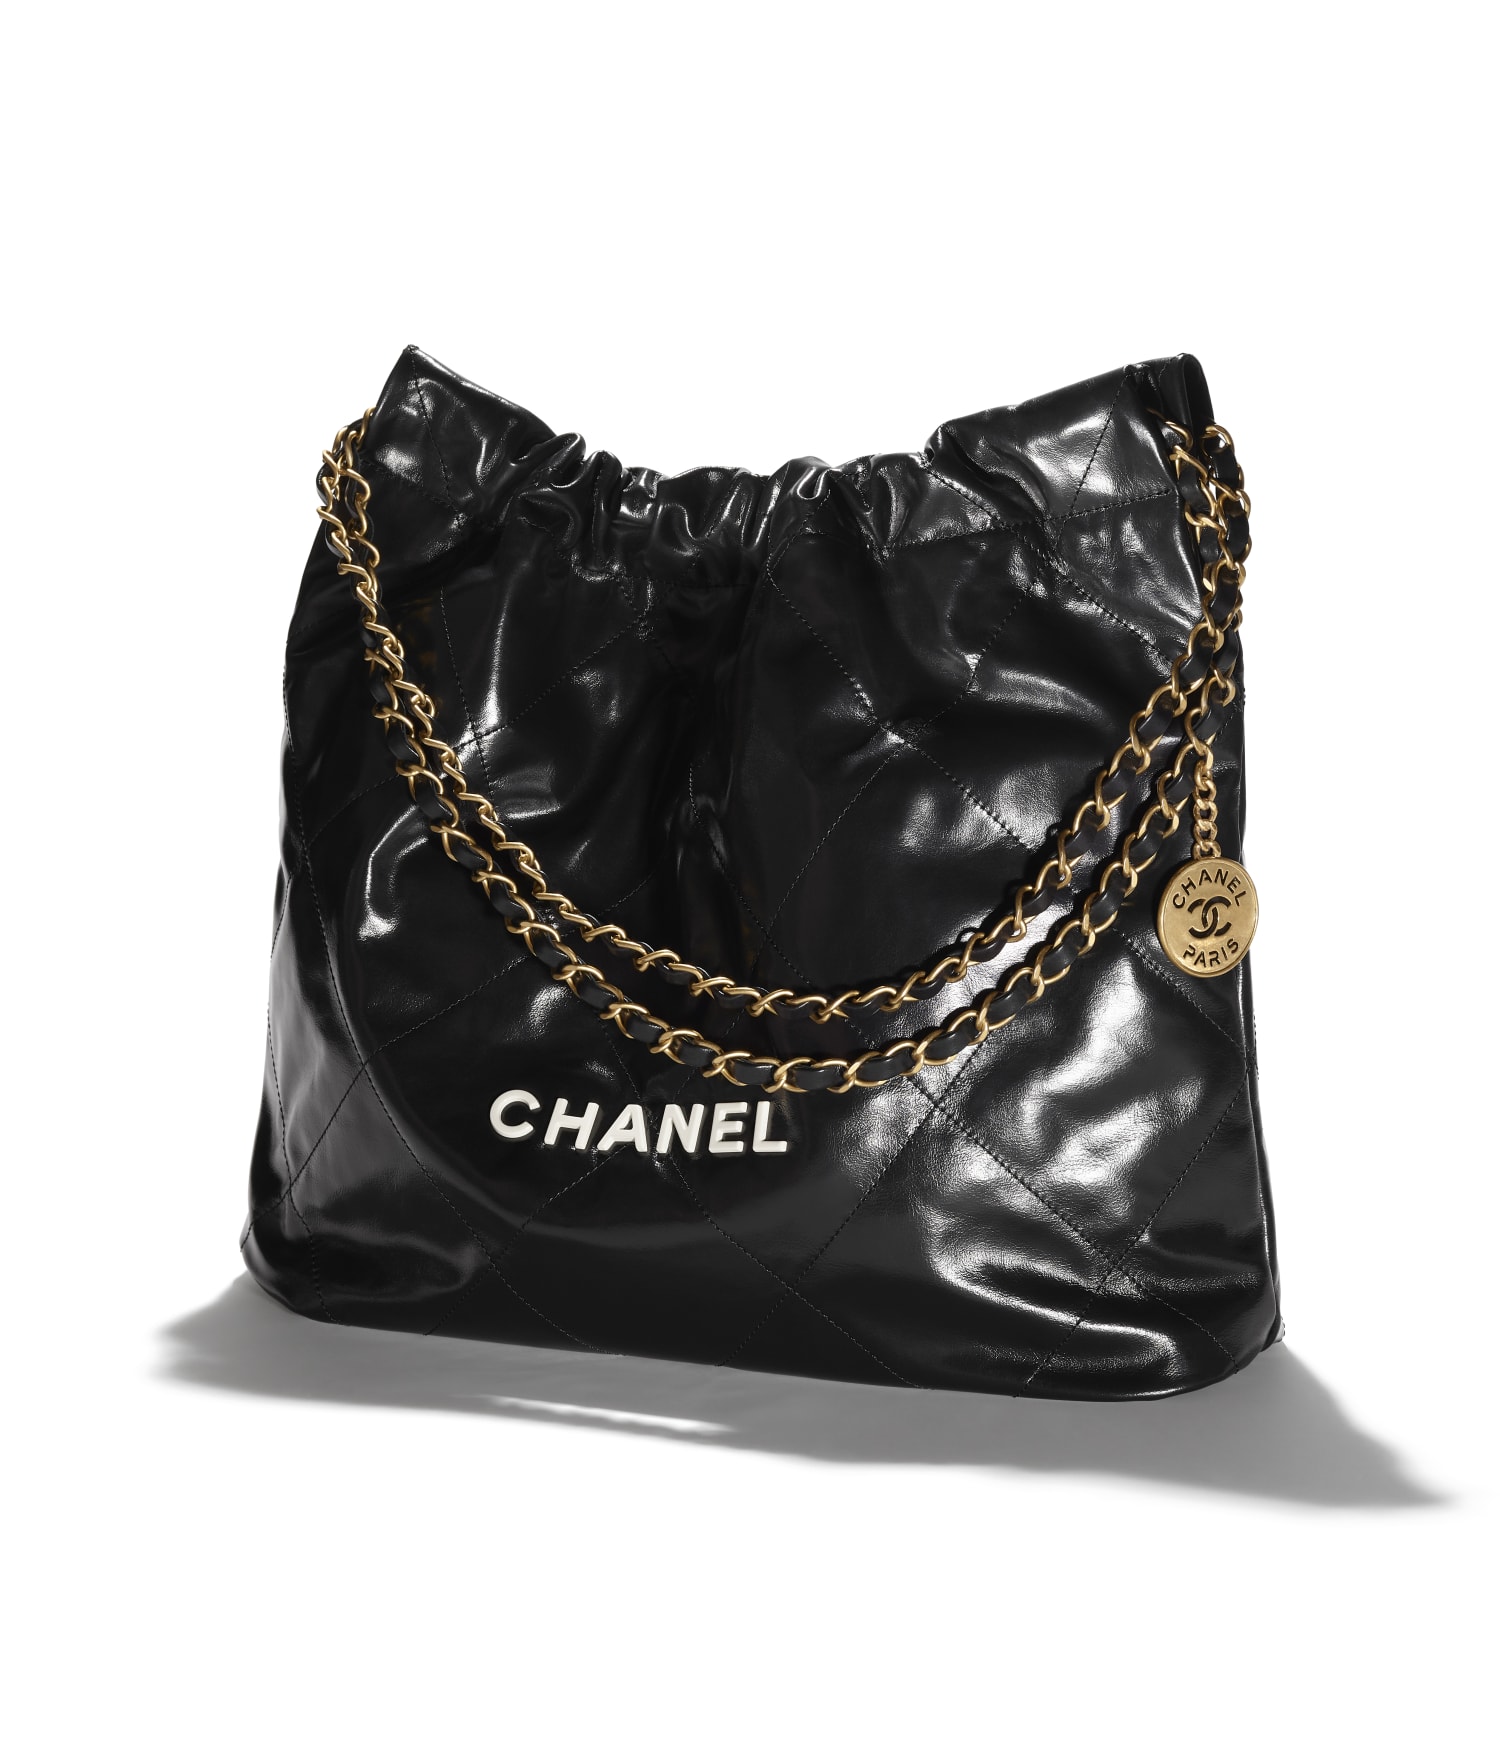 Már csak márciusig kell várni a Chanel új táskájára - Glamour